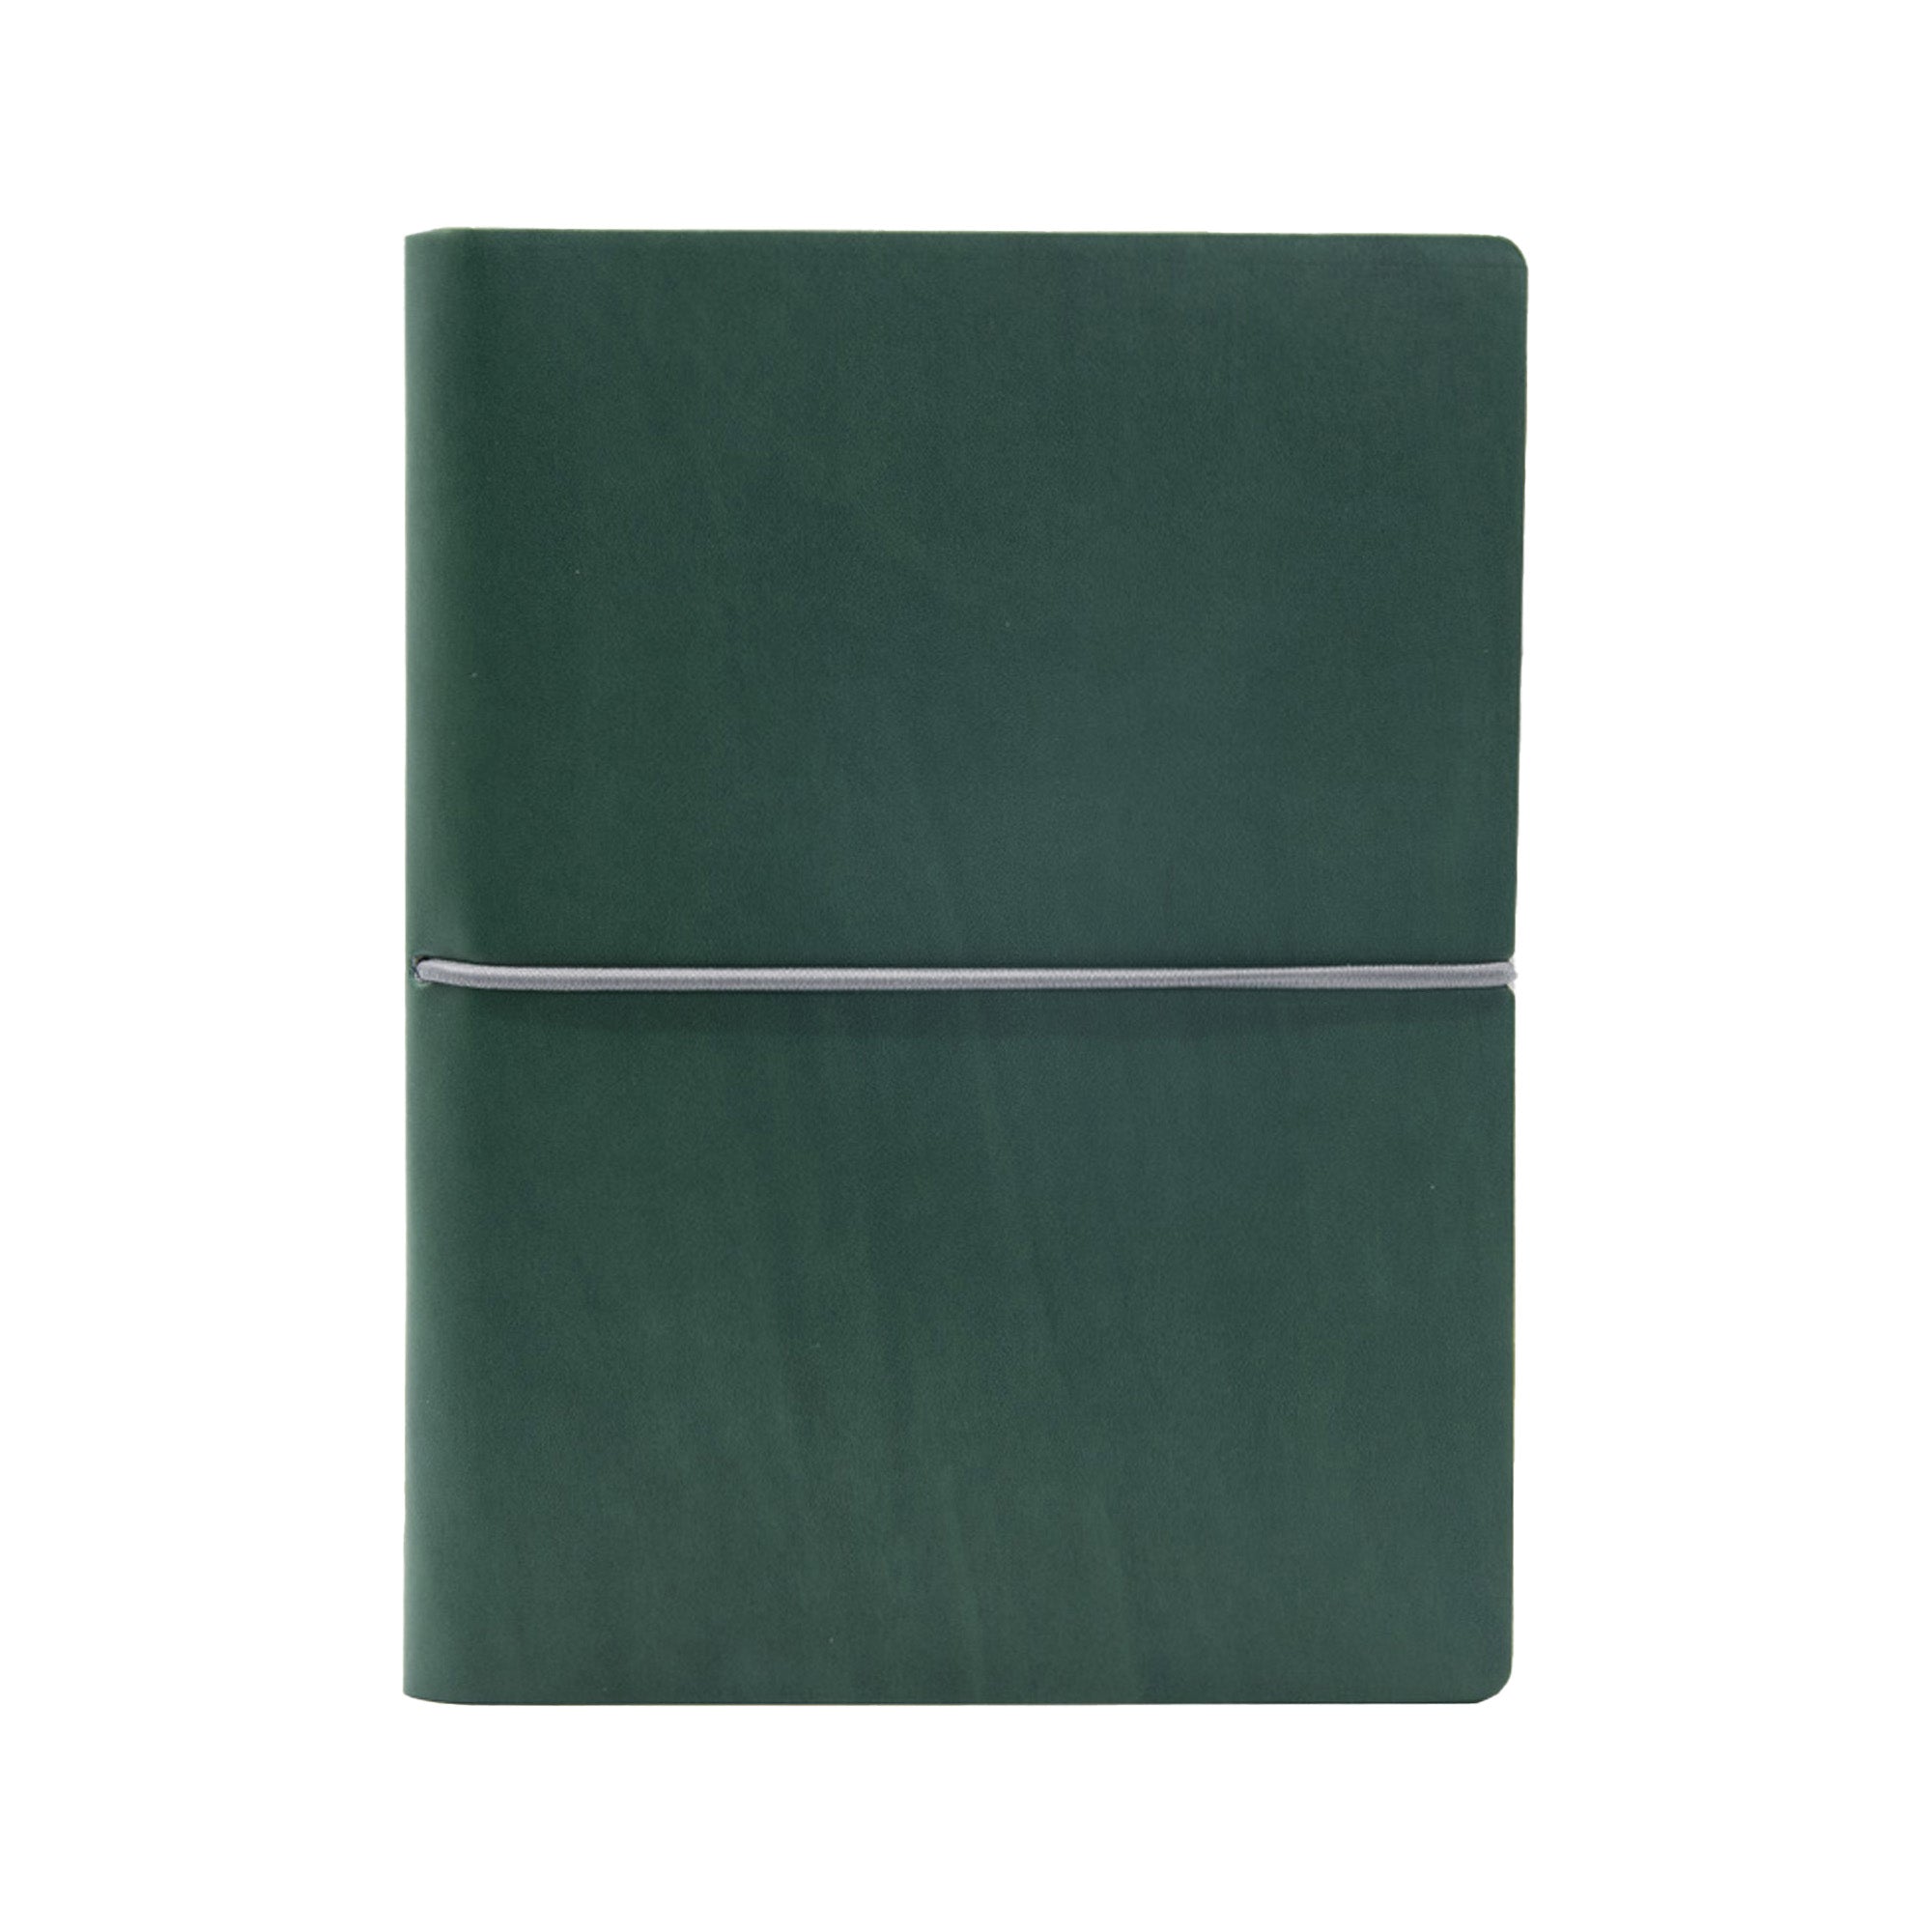 in-tempo-taccuino-evo-ciak-f-to-15x21cm-fogli-bianchi-copertina-verde-intempo